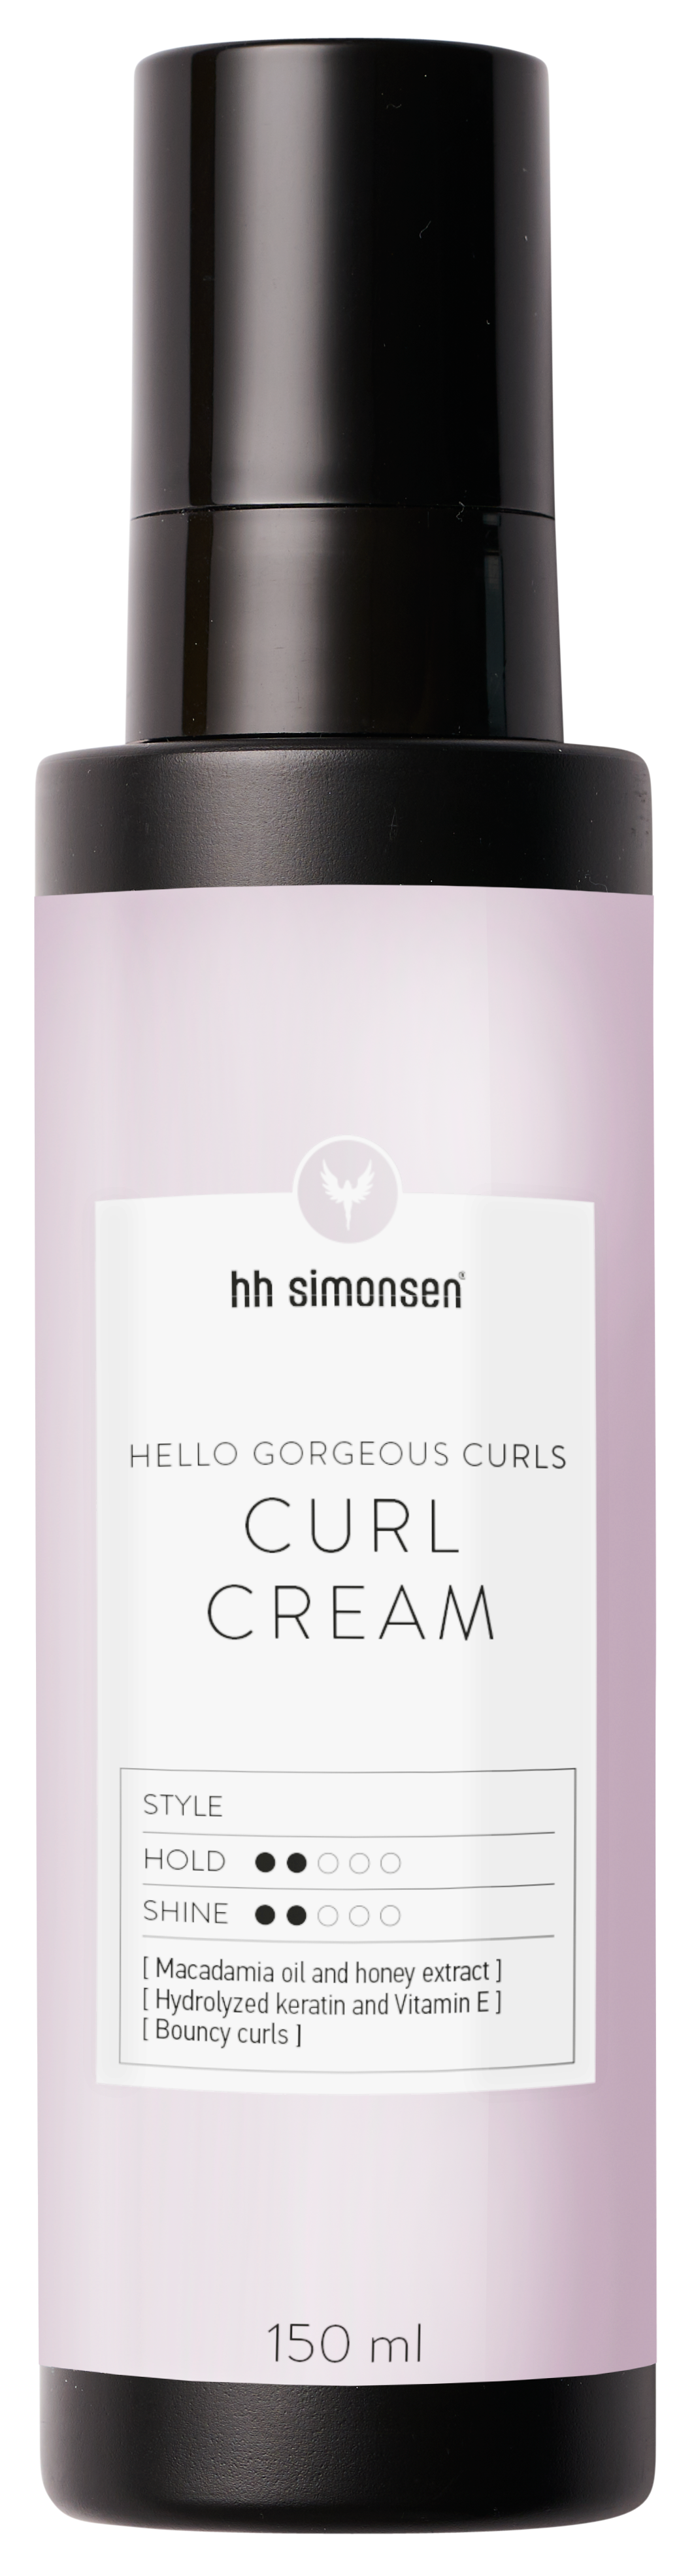 HH Simonsen Curl Creme, 150 ml